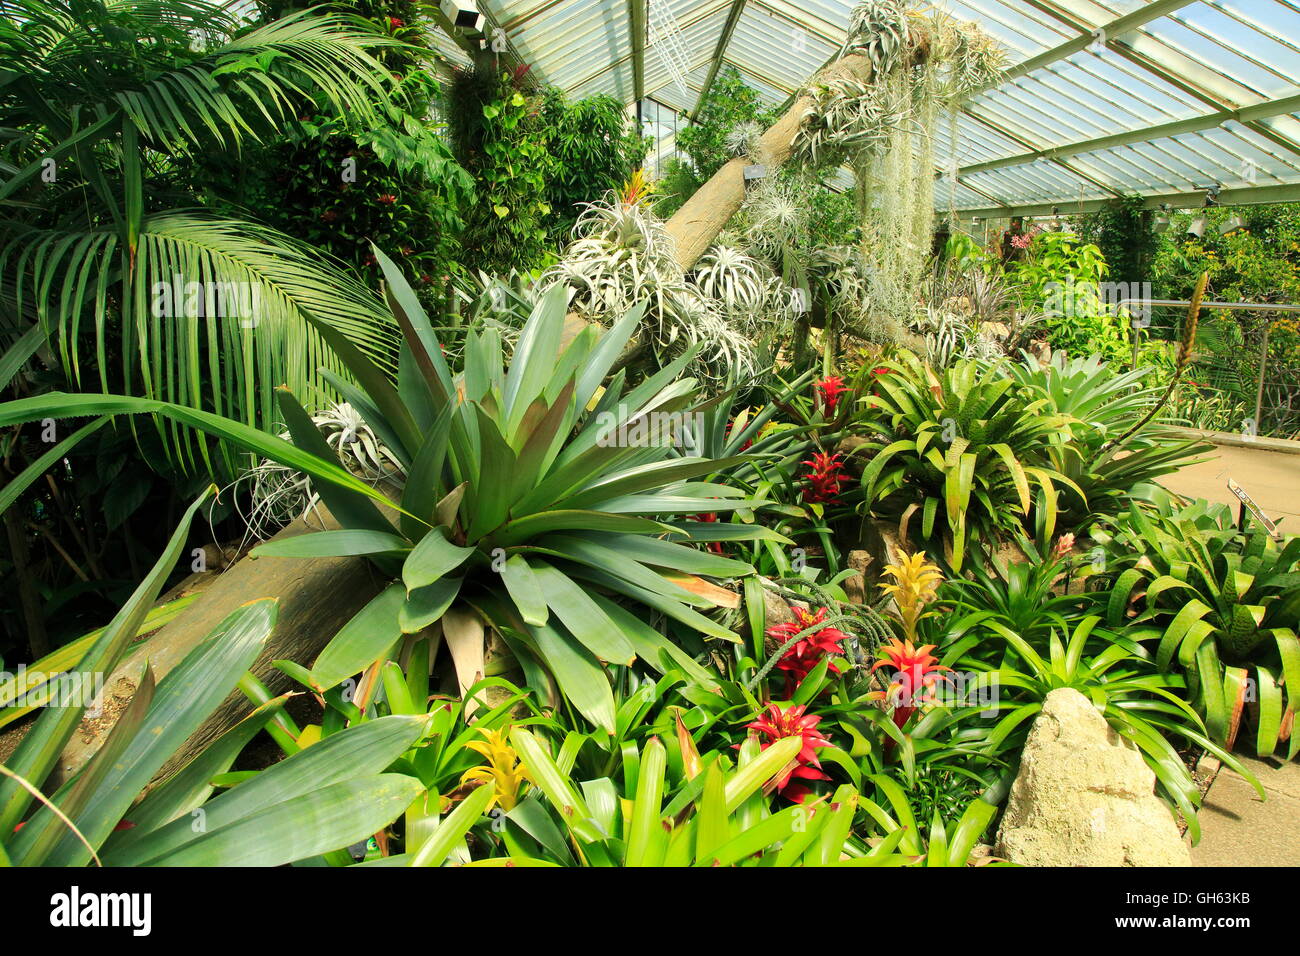 Environnement de forêt tropicale à l'intérieur de l'hôtel Princess of Wales conservatory, Royal Botanic Gardens, Kew, Londres, Angleterre, Royaume-Uni Banque D'Images